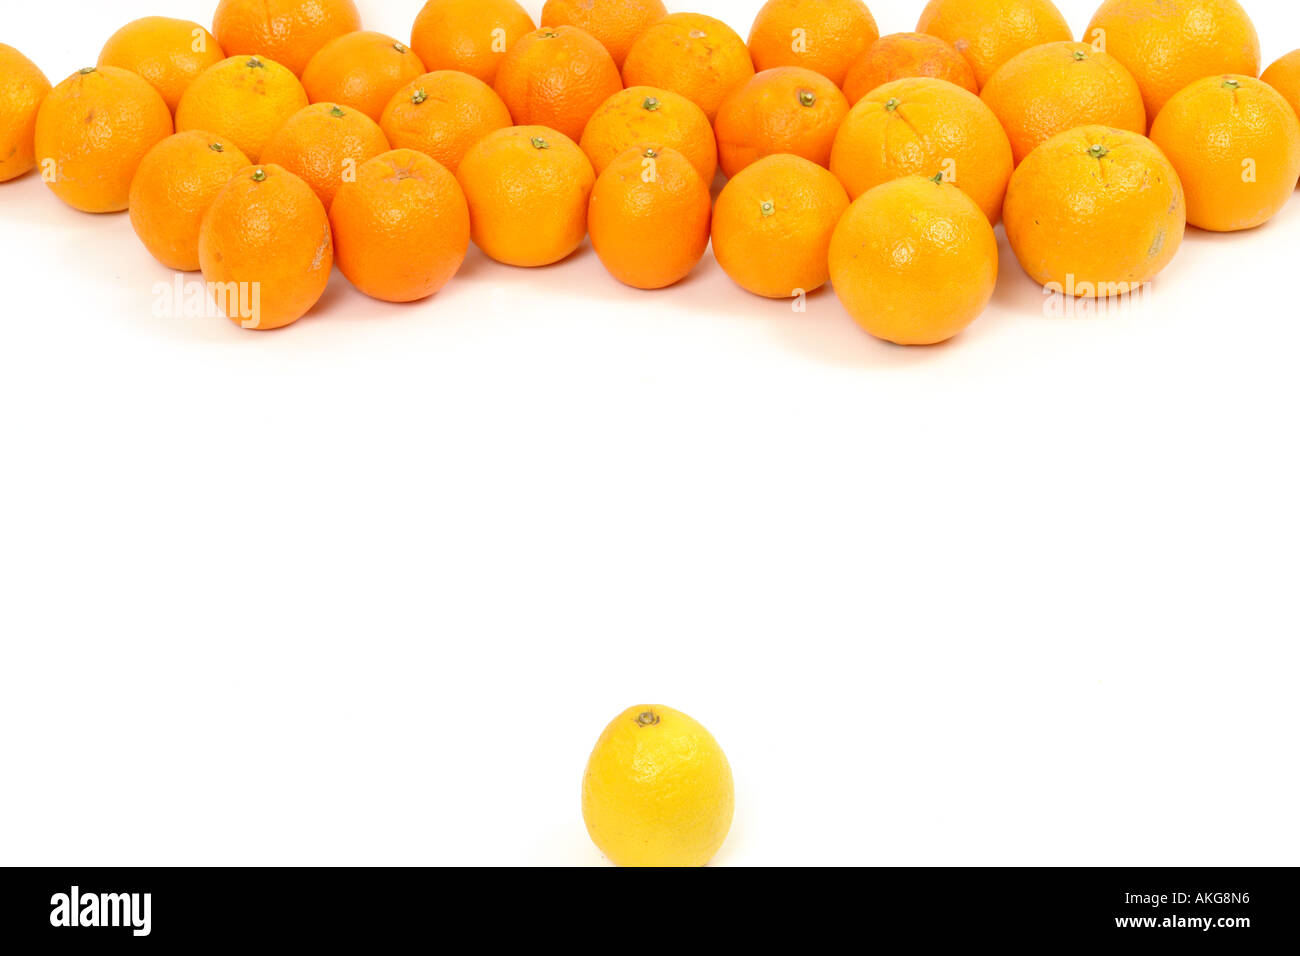 Le citron et les oranges sur un fond blanc symbolisant la confrontation Banque D'Images